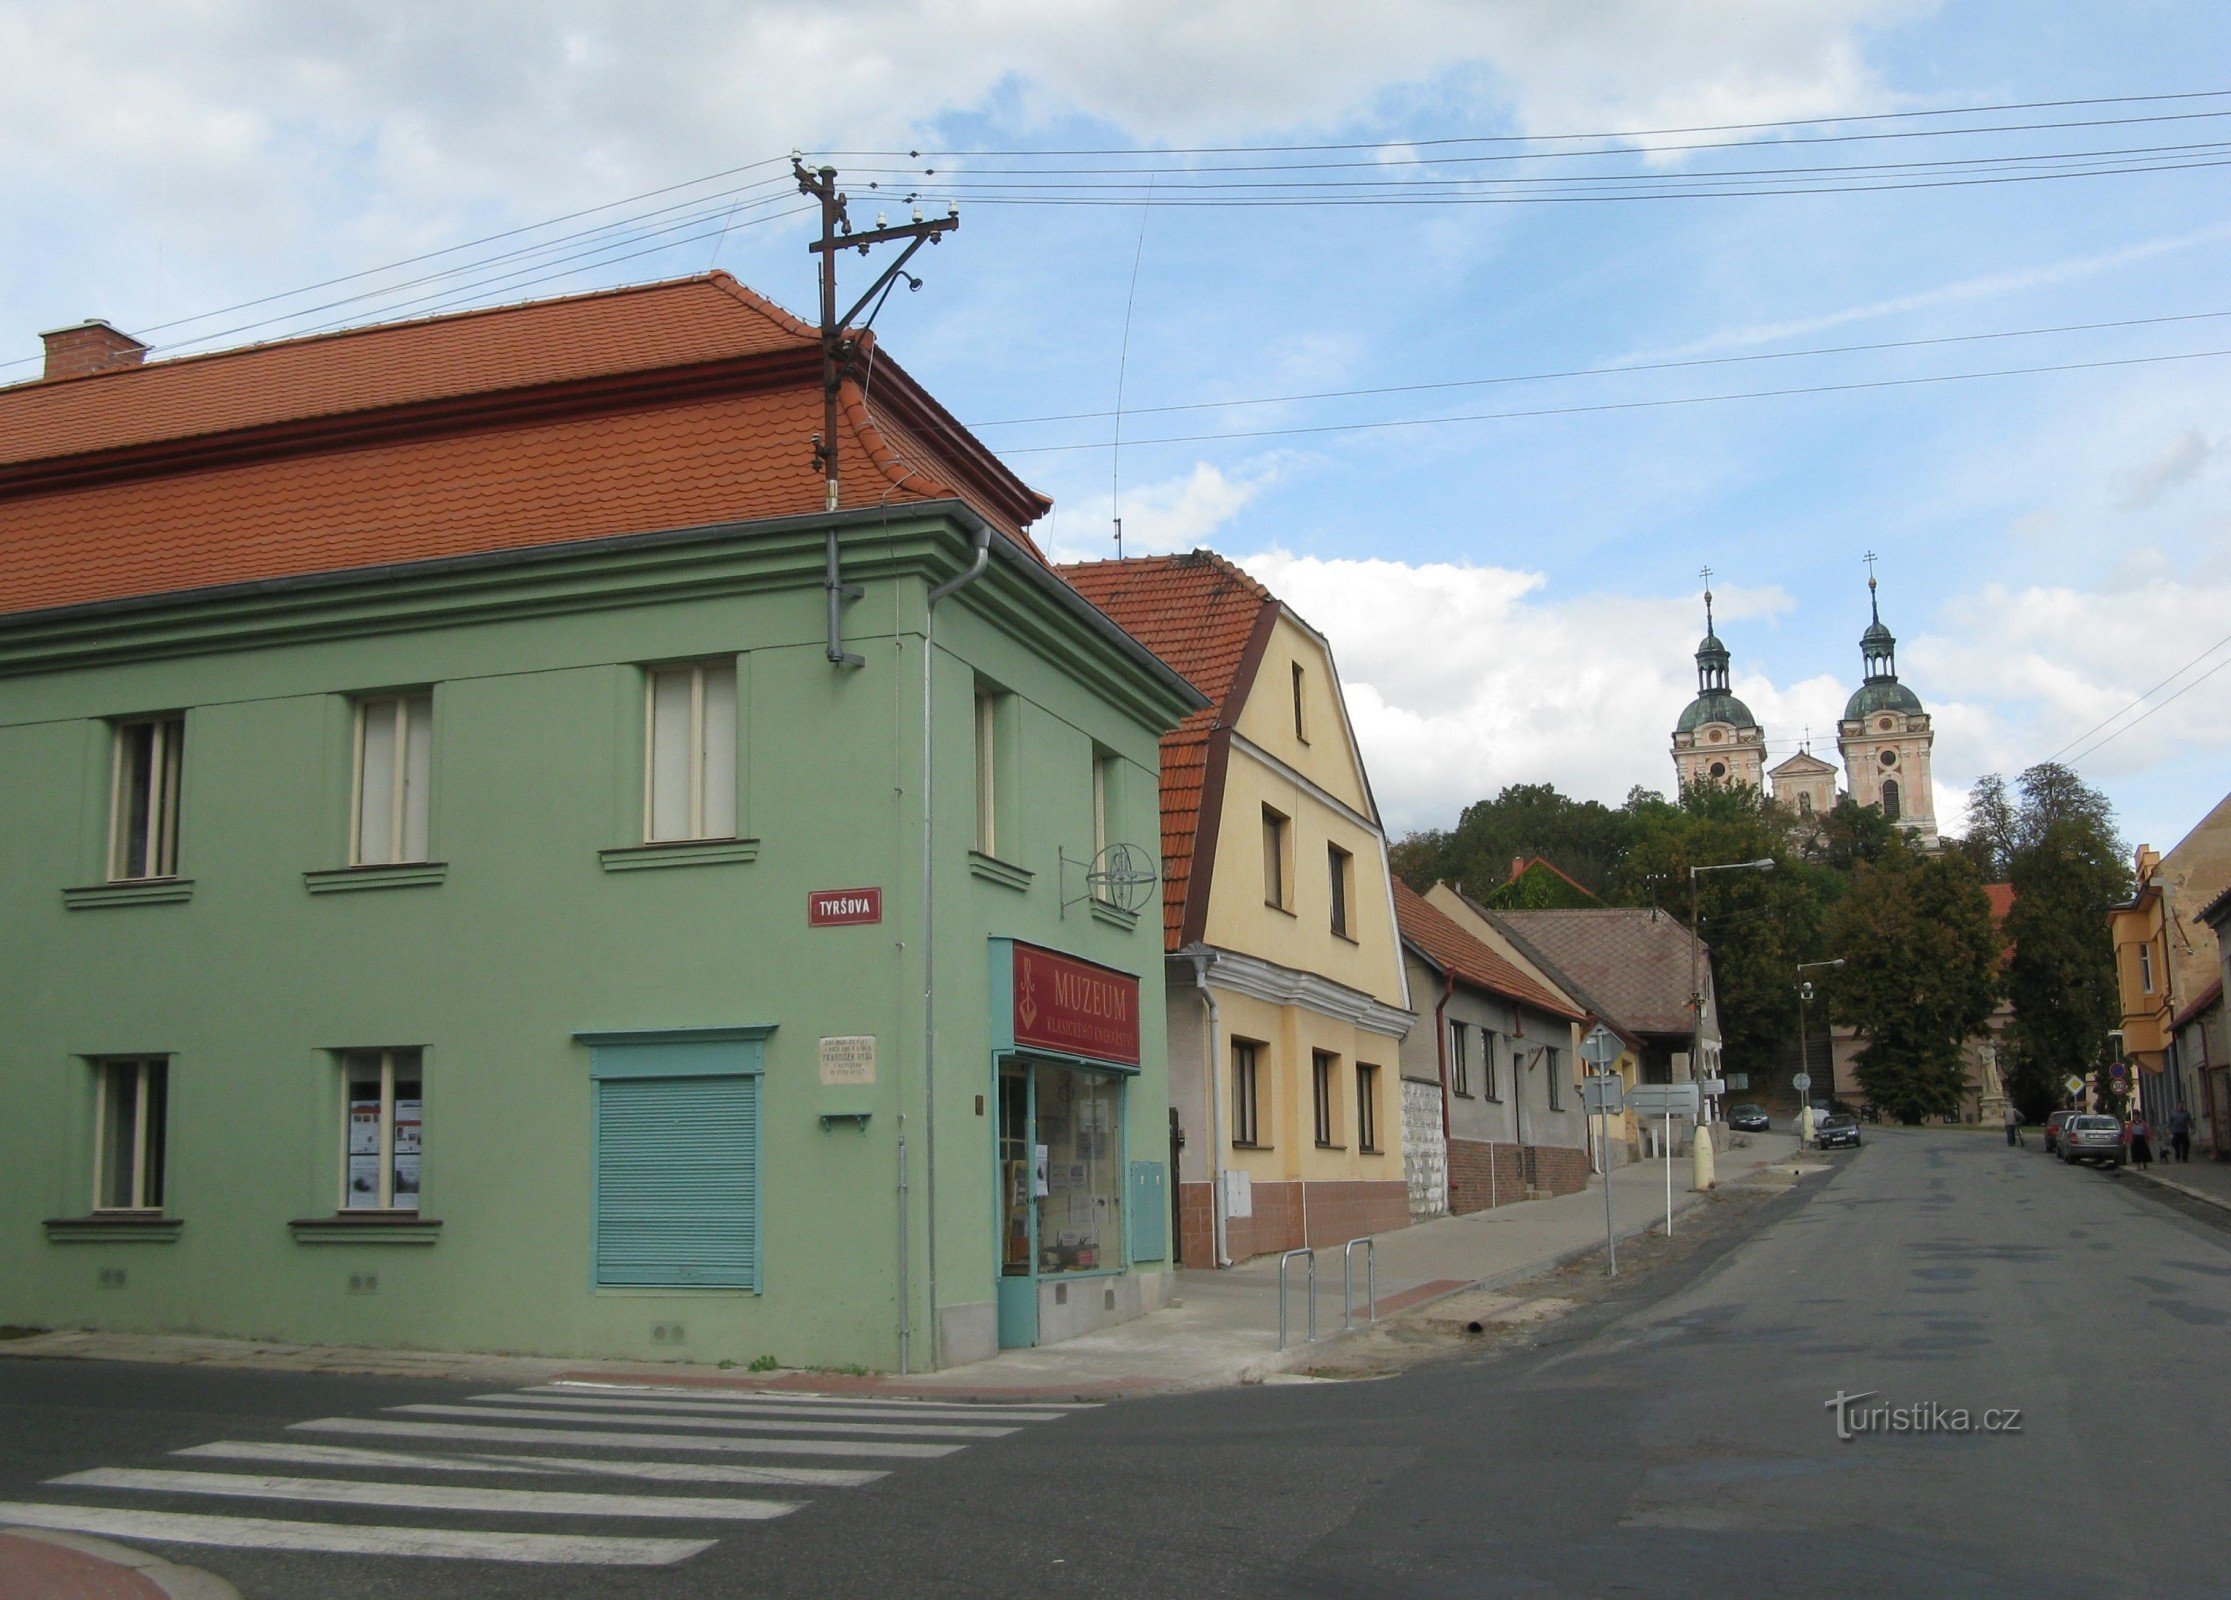 Hlavní vstup do muzea je bývalým krámem - z Husovy ulice, která míří ke kostelu